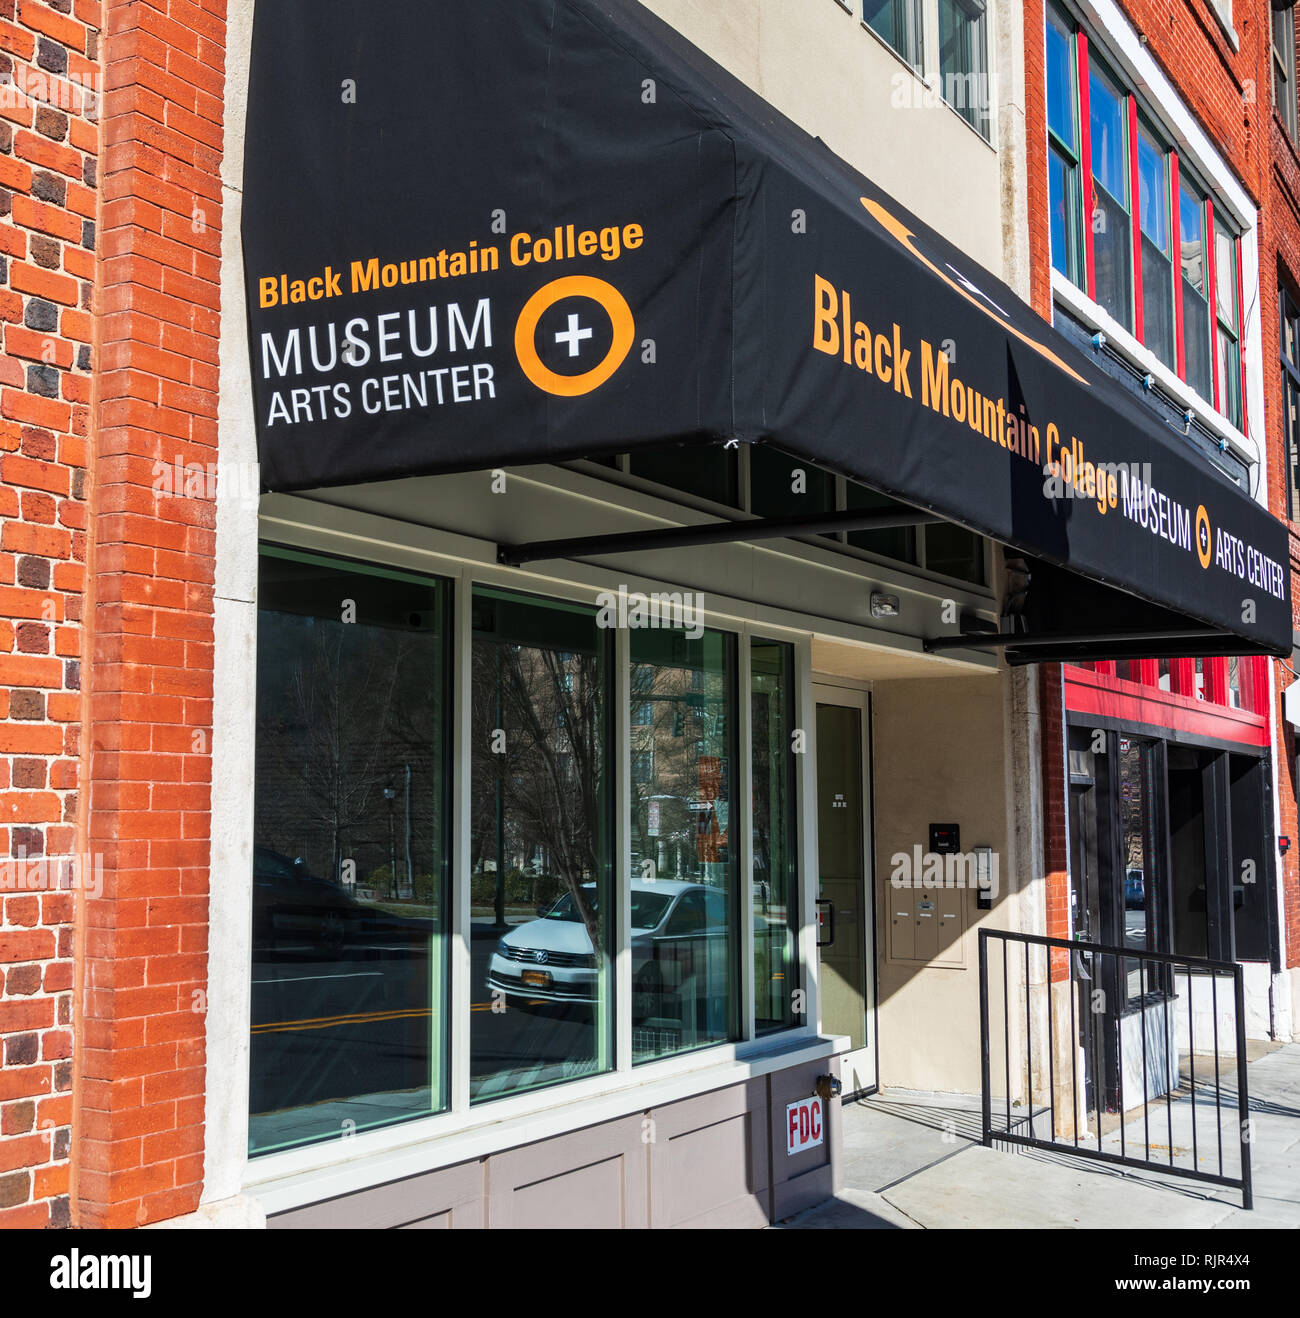 ASHEVILLE, NC, Stati Uniti d'America-2/3/19: il Black Mountain College Museo e Centro delle Arti è dedicato a conservare la storia e l'eredità del collegio. Foto Stock